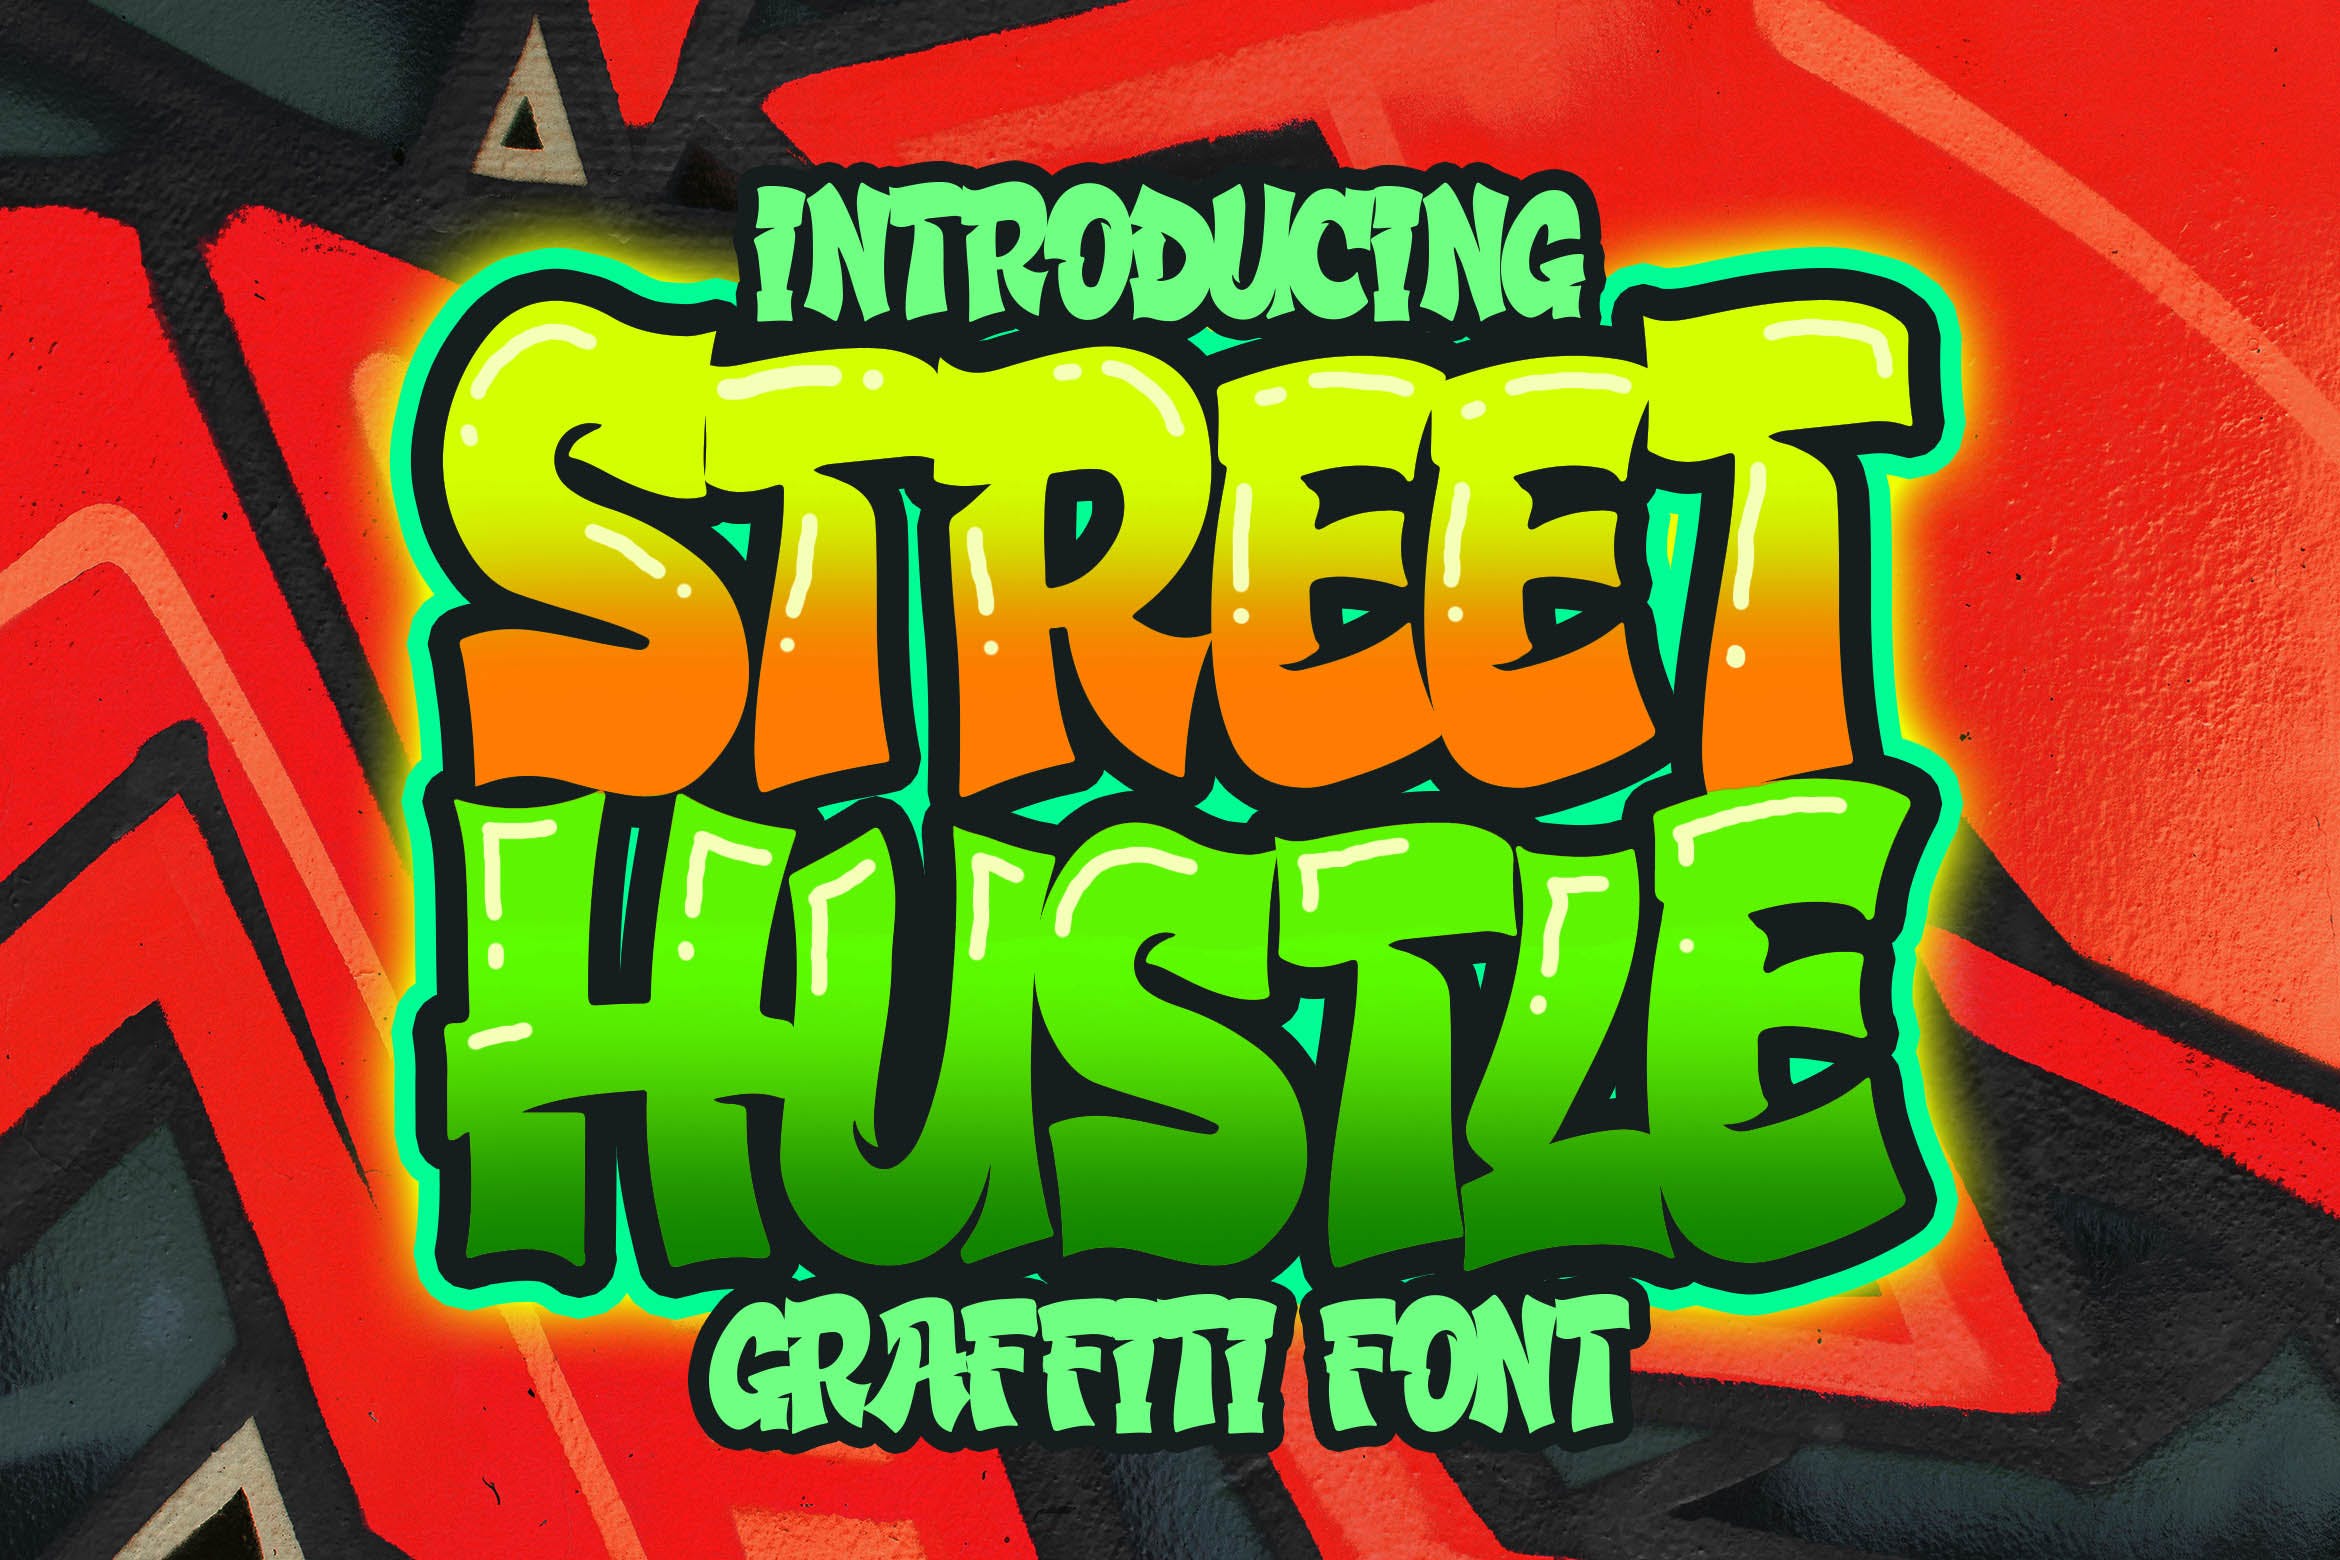 街头涂鸦艺术风格英文装饰字体非凡图库精选 Street Hustle – Graffiti Font插图